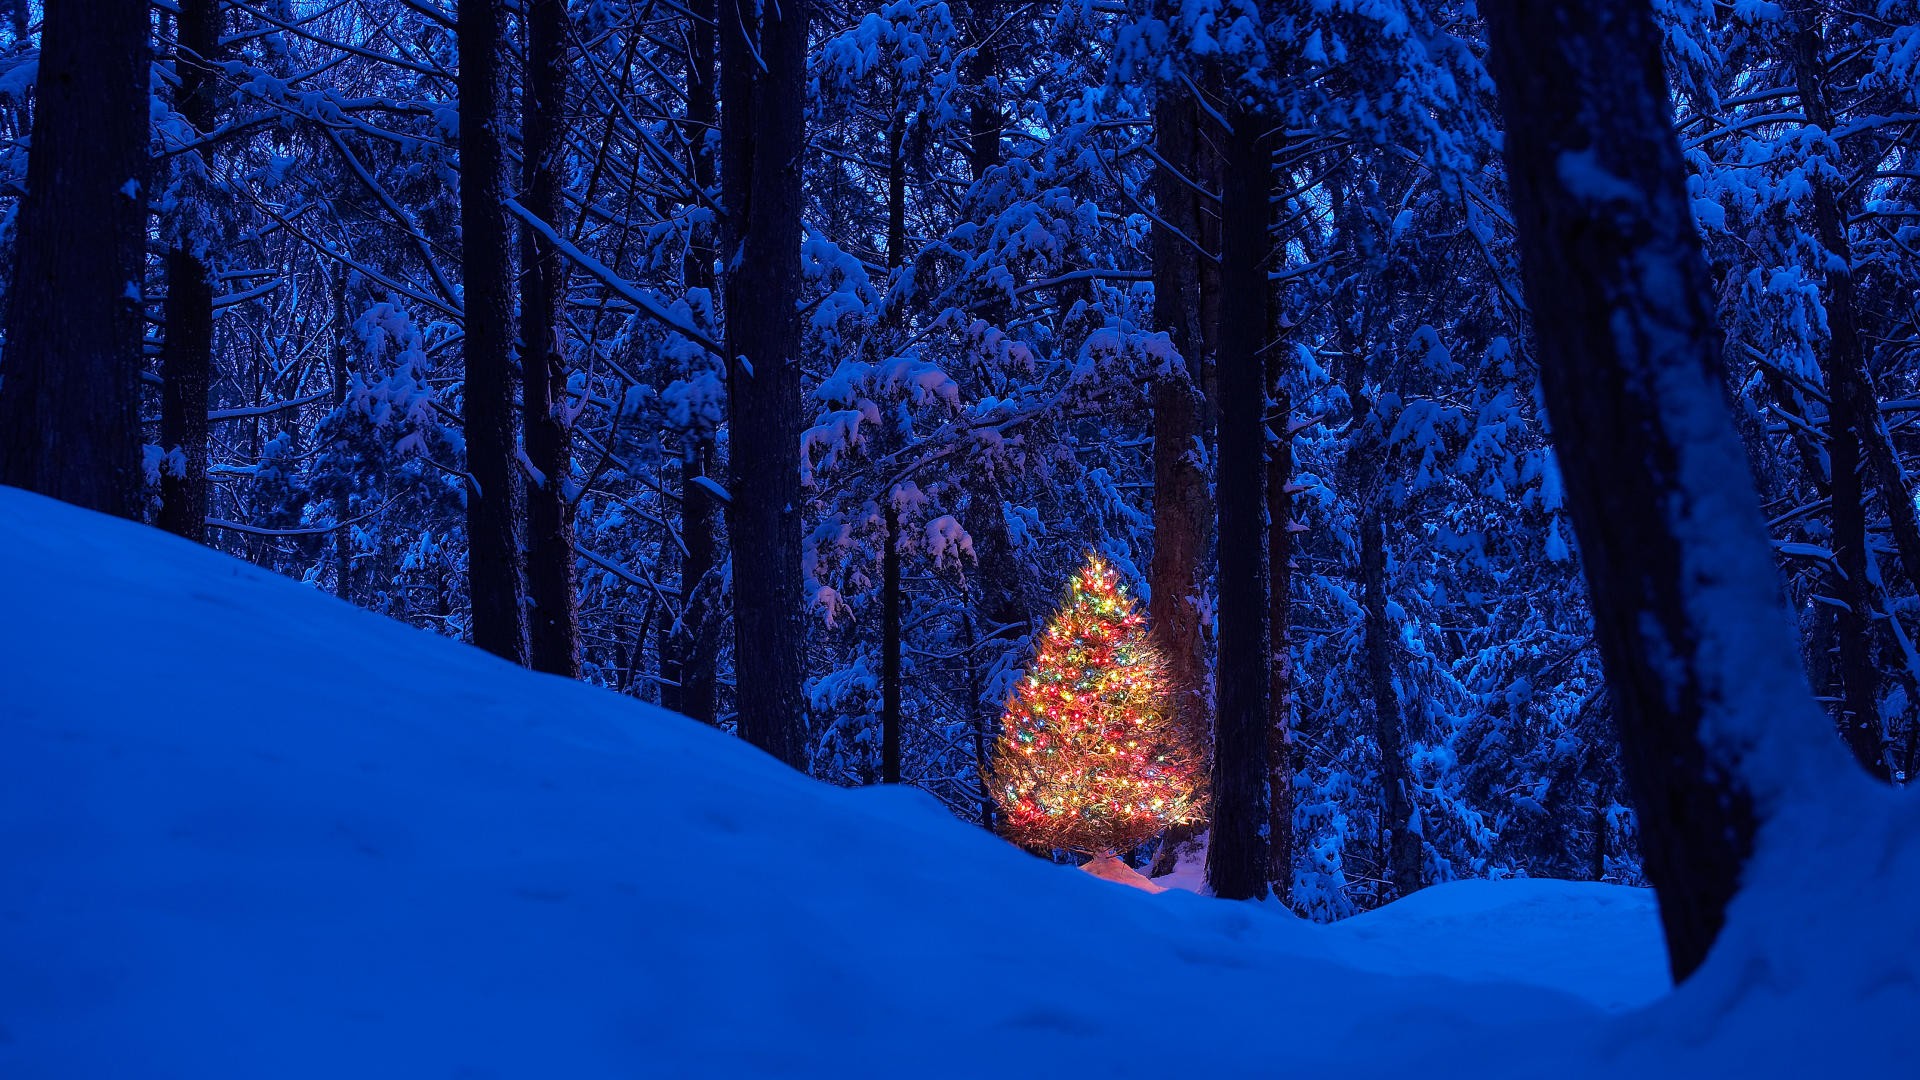 noël fonds d'écran 1920x1080,bleu,hiver,neige,arbre,la nature